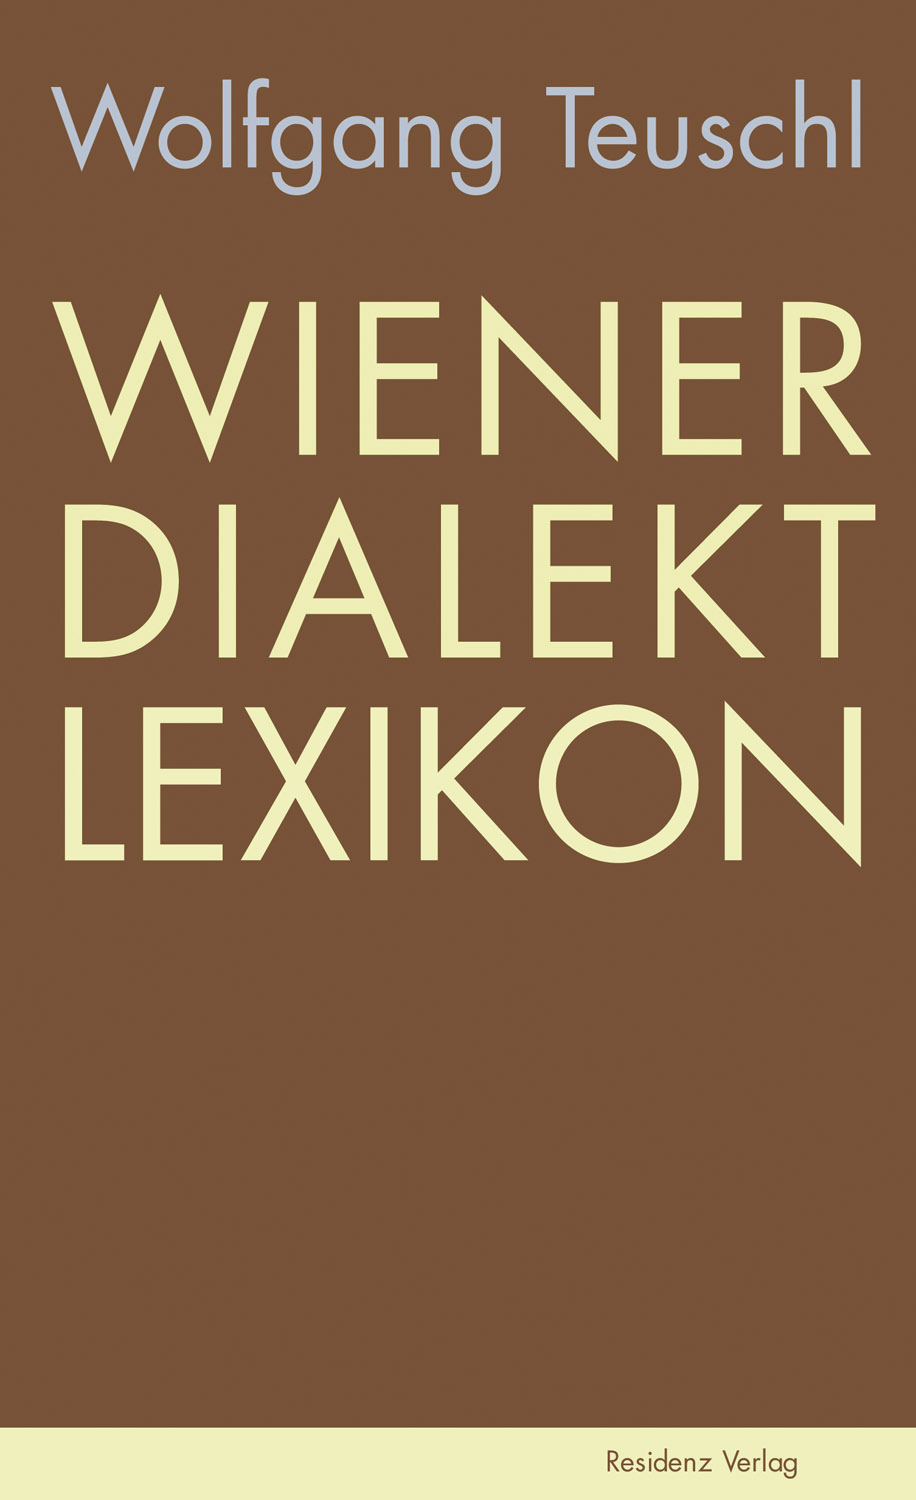 Wolfgang Teuschl Wiener Dialekt Lexikon